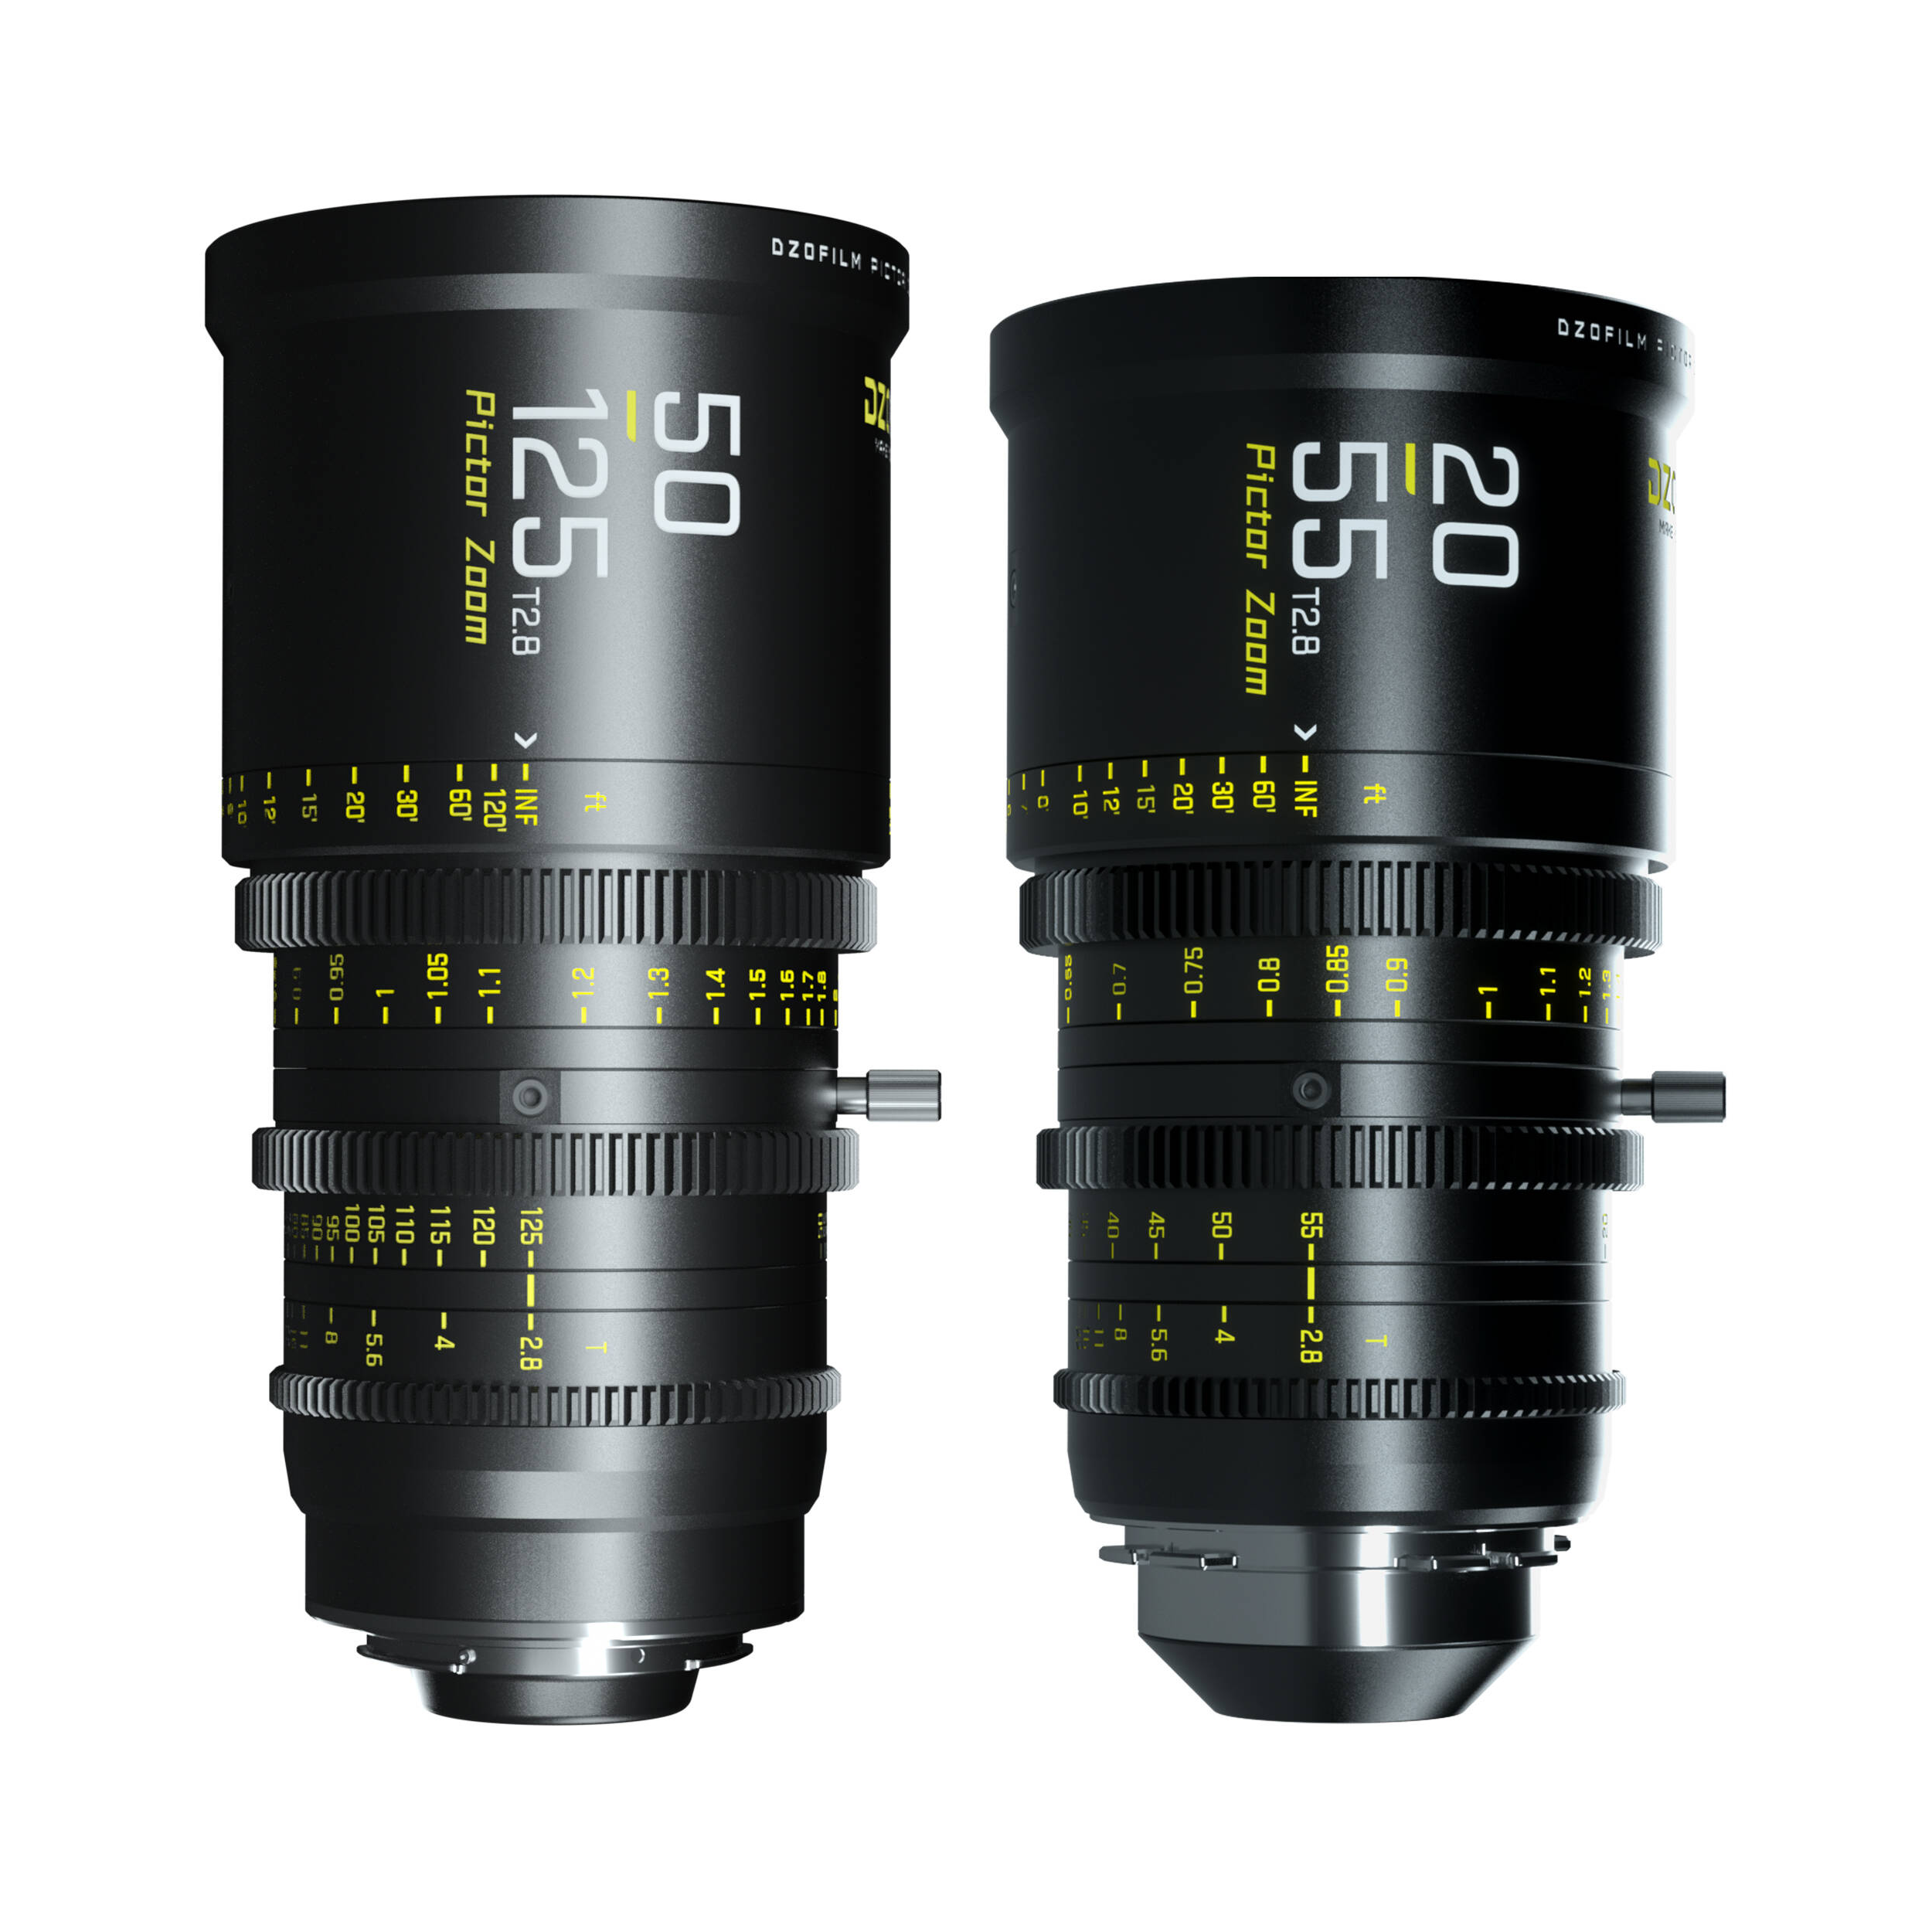 Dzofilm Pictor 20-55 mm et 50-125 mm T2.8 Super35 Zoom Lens Bundle (PL Mount and EF Mount, noir)